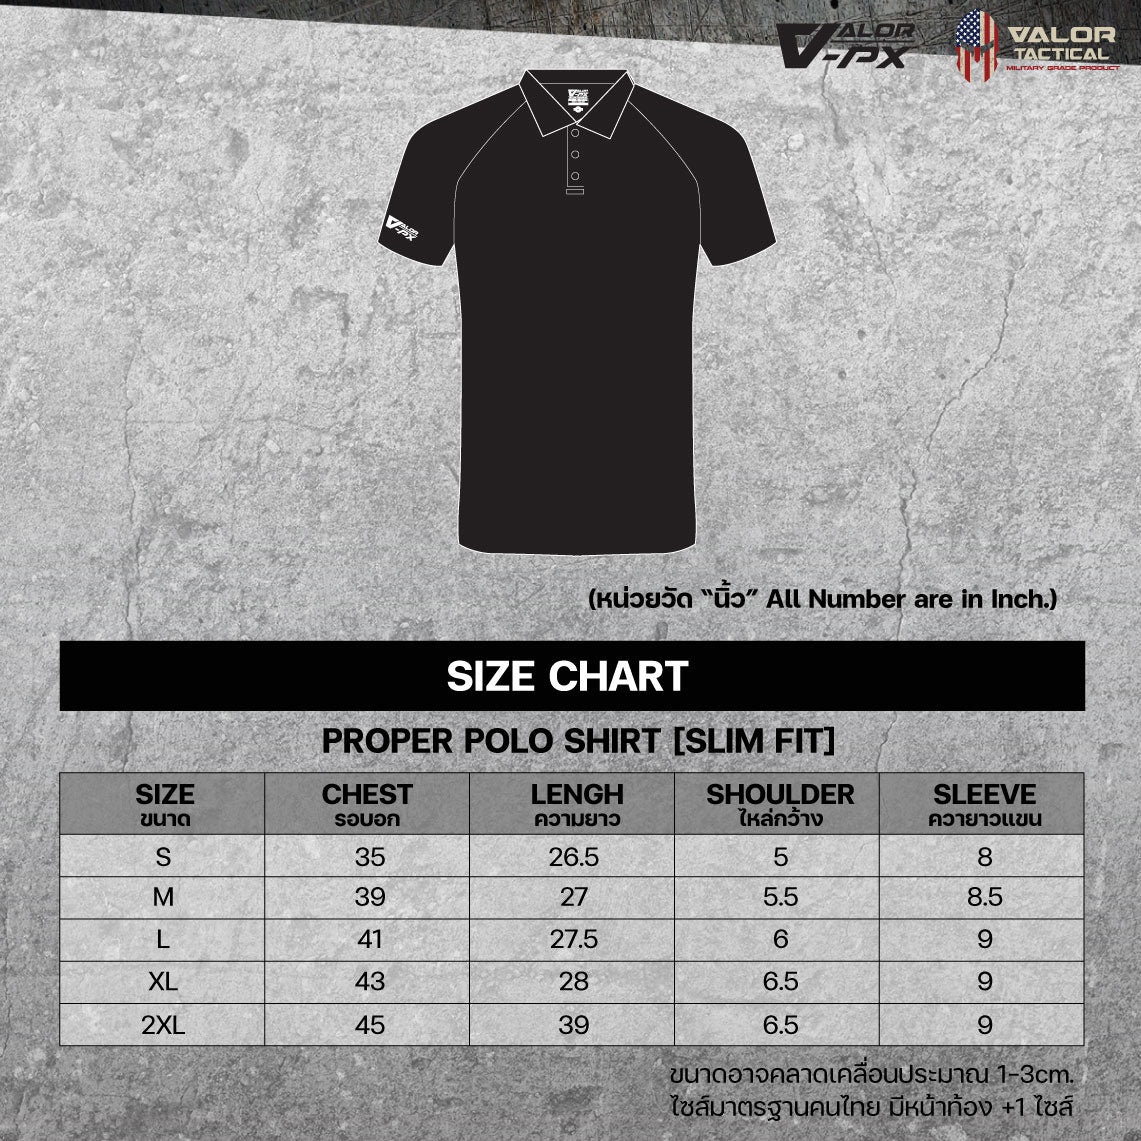 Valor PX Proper Polo Shirt ,Slim Fit (เสื้อเปล่า)